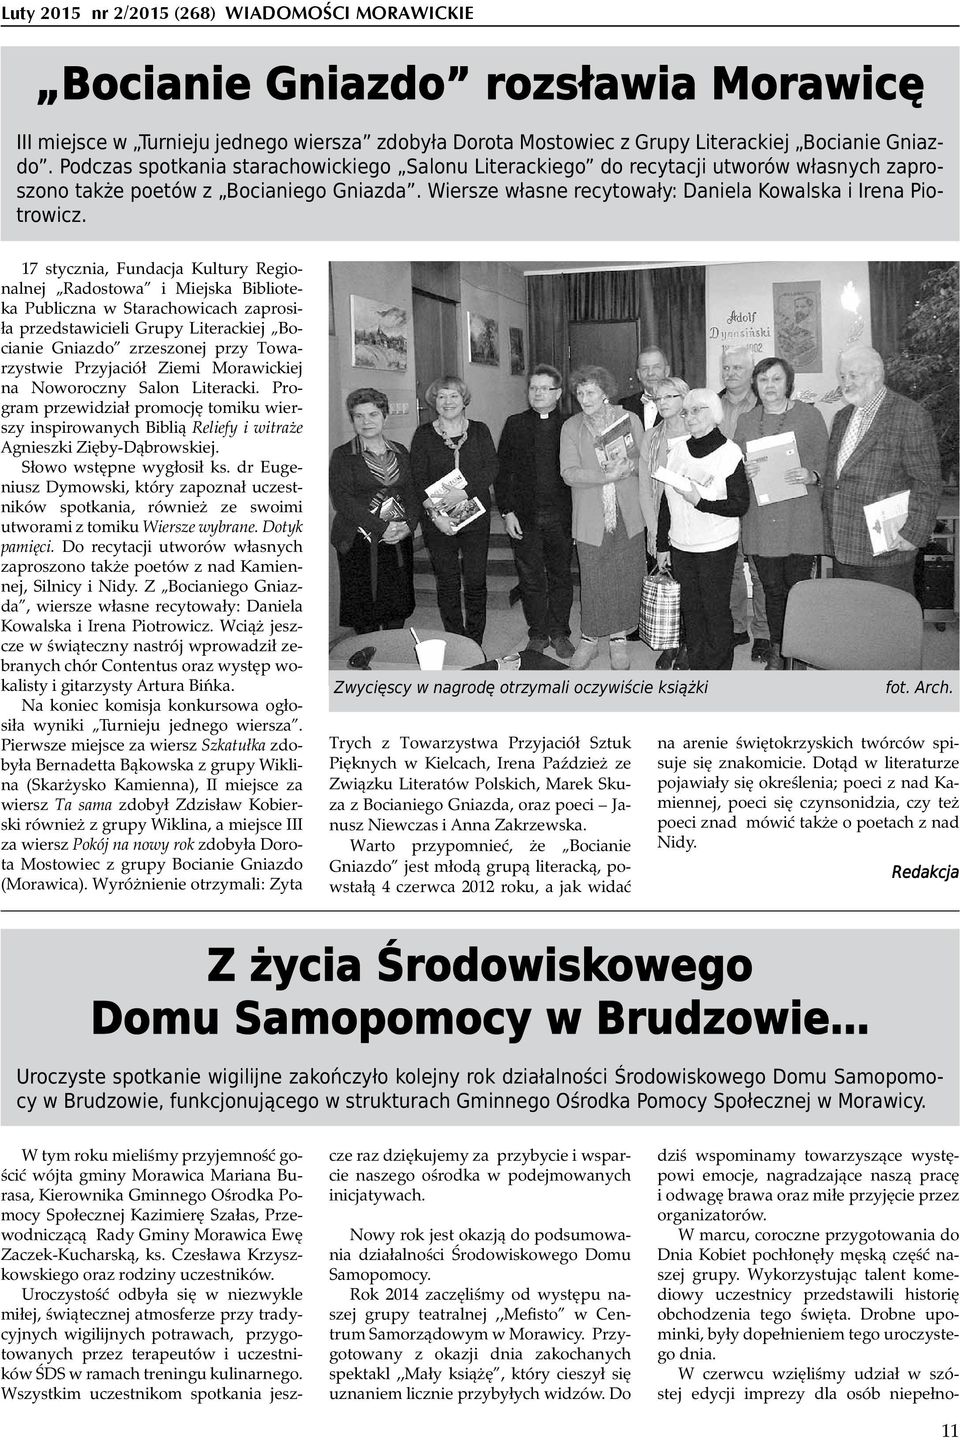 17 stycznia, Fundacja Kultury Regionalnej Radostowa i Miejska Biblioteka Publiczna w Starachowicach zaprosiła przedstawicieli Grupy Literackiej Bocianie Gniazdo zrzeszonej przy Towarzystwie